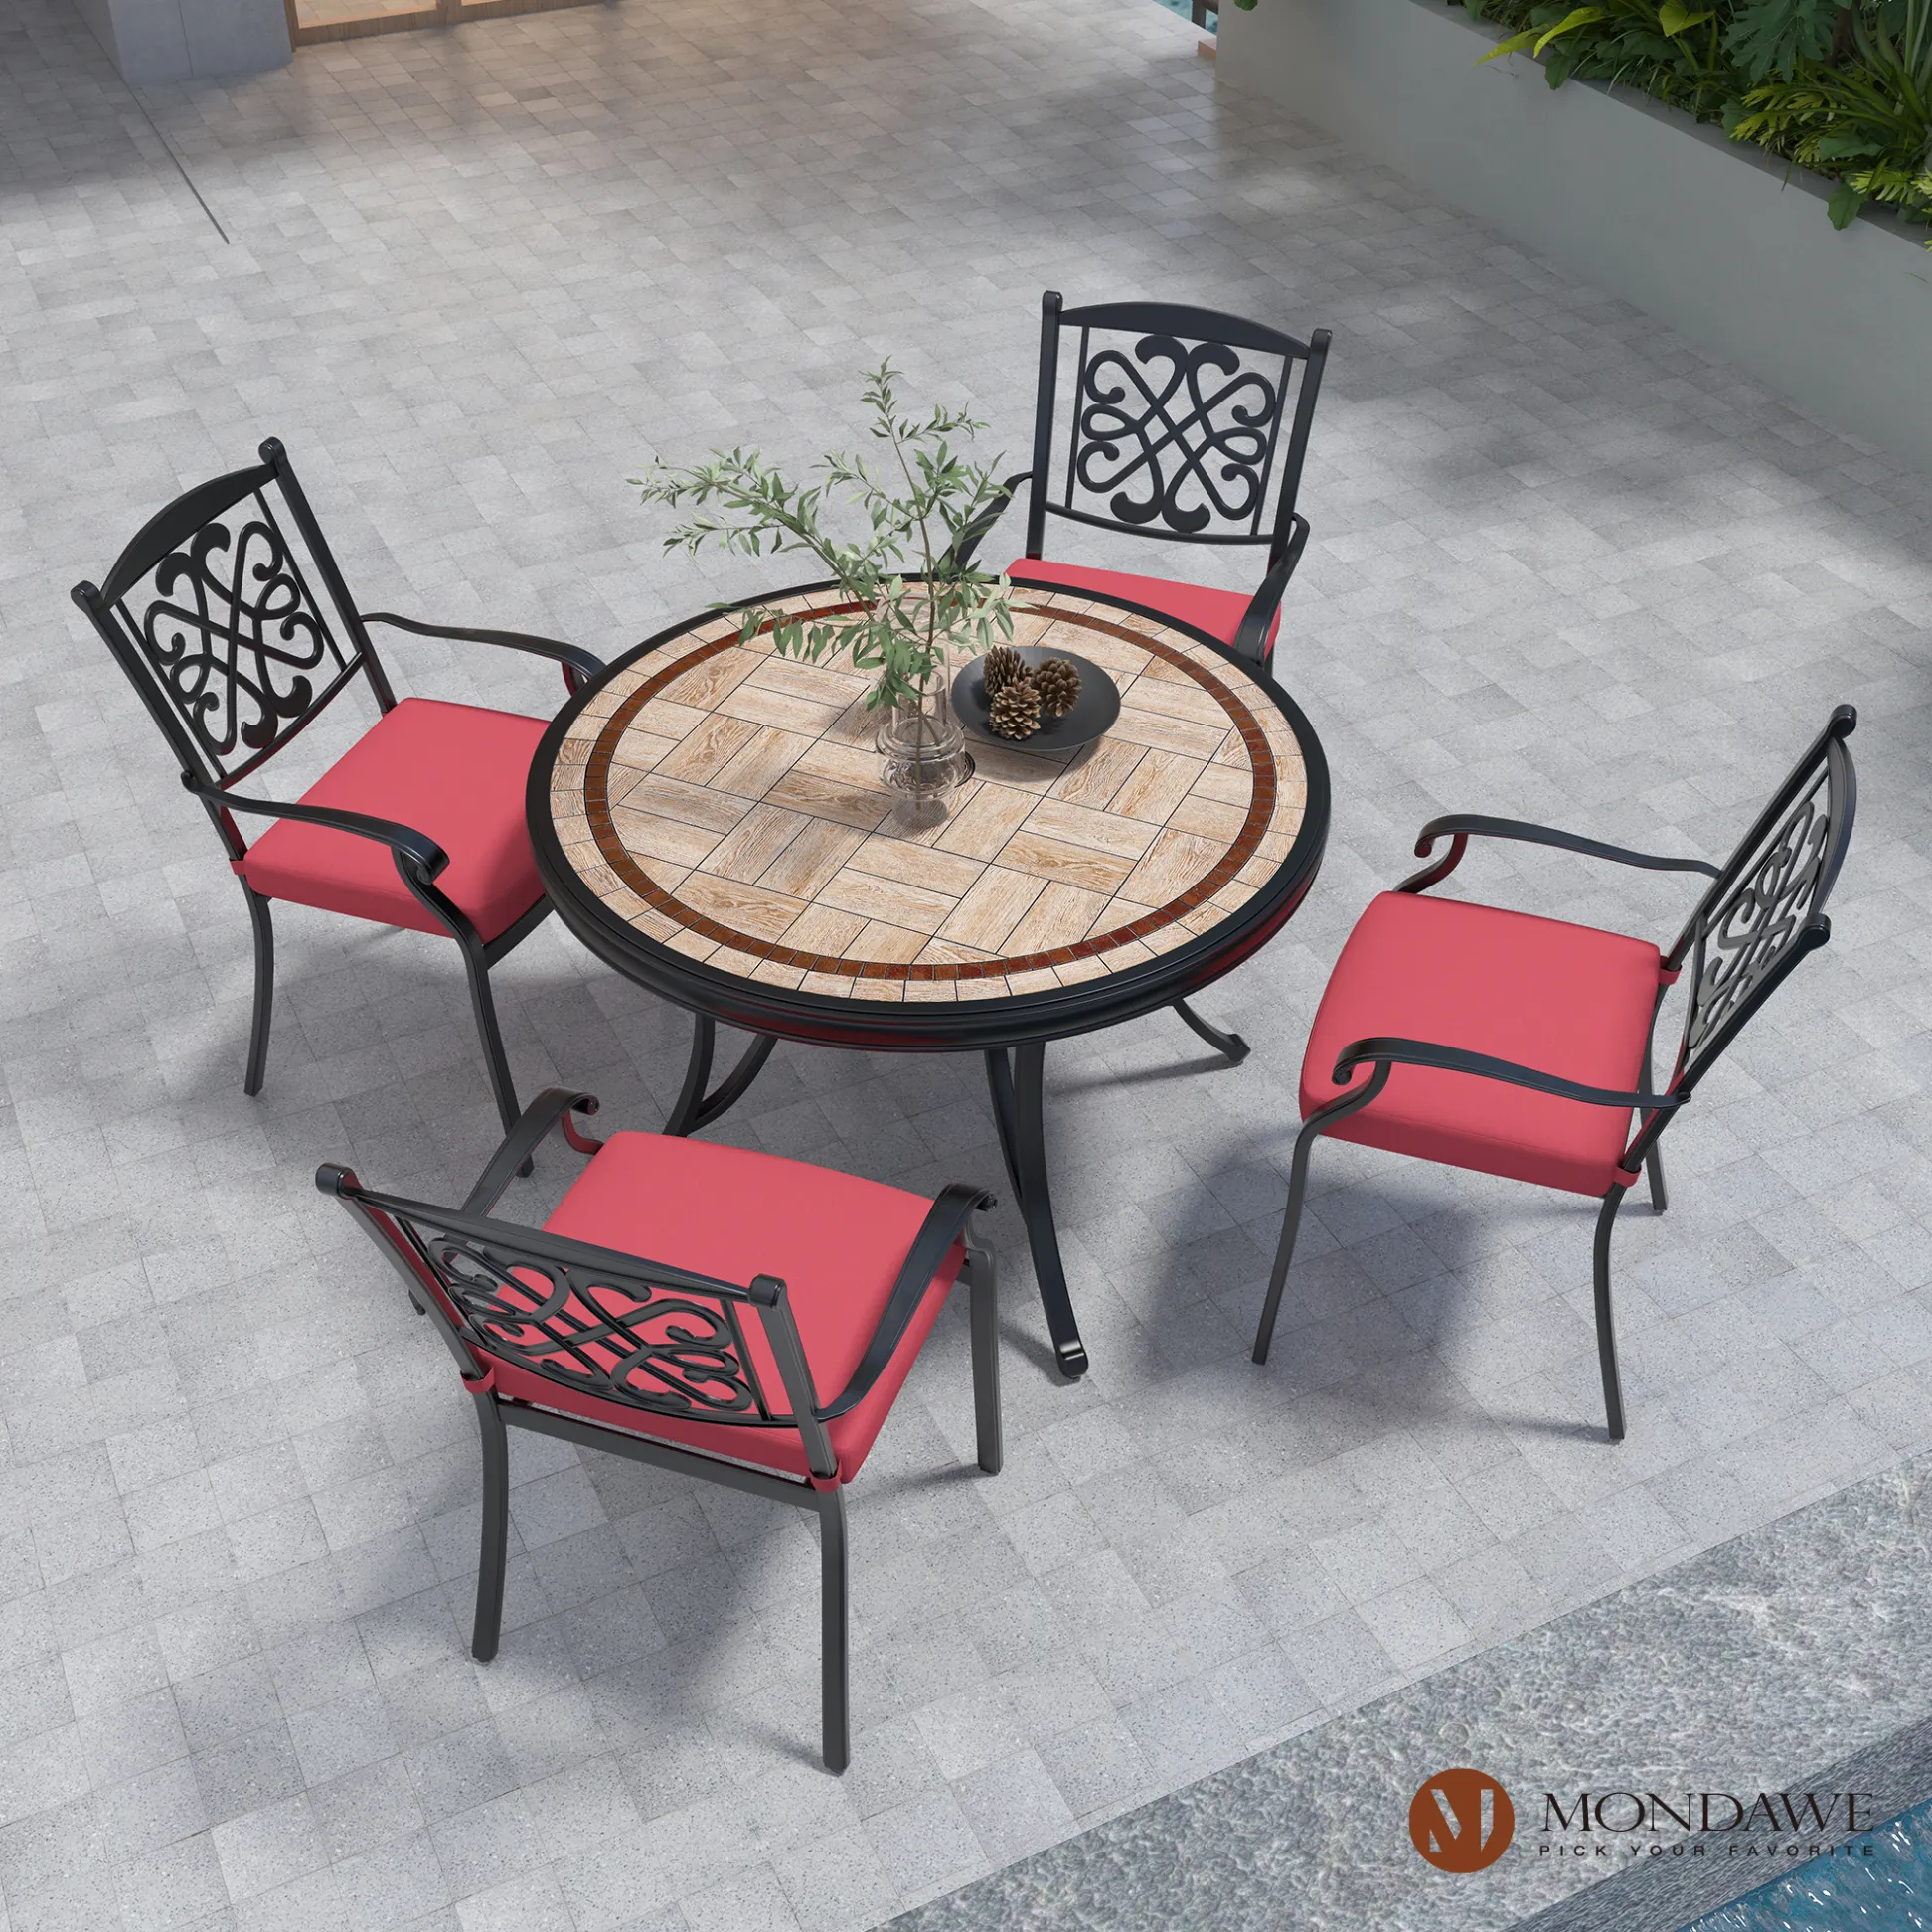 aluminum patio furniture